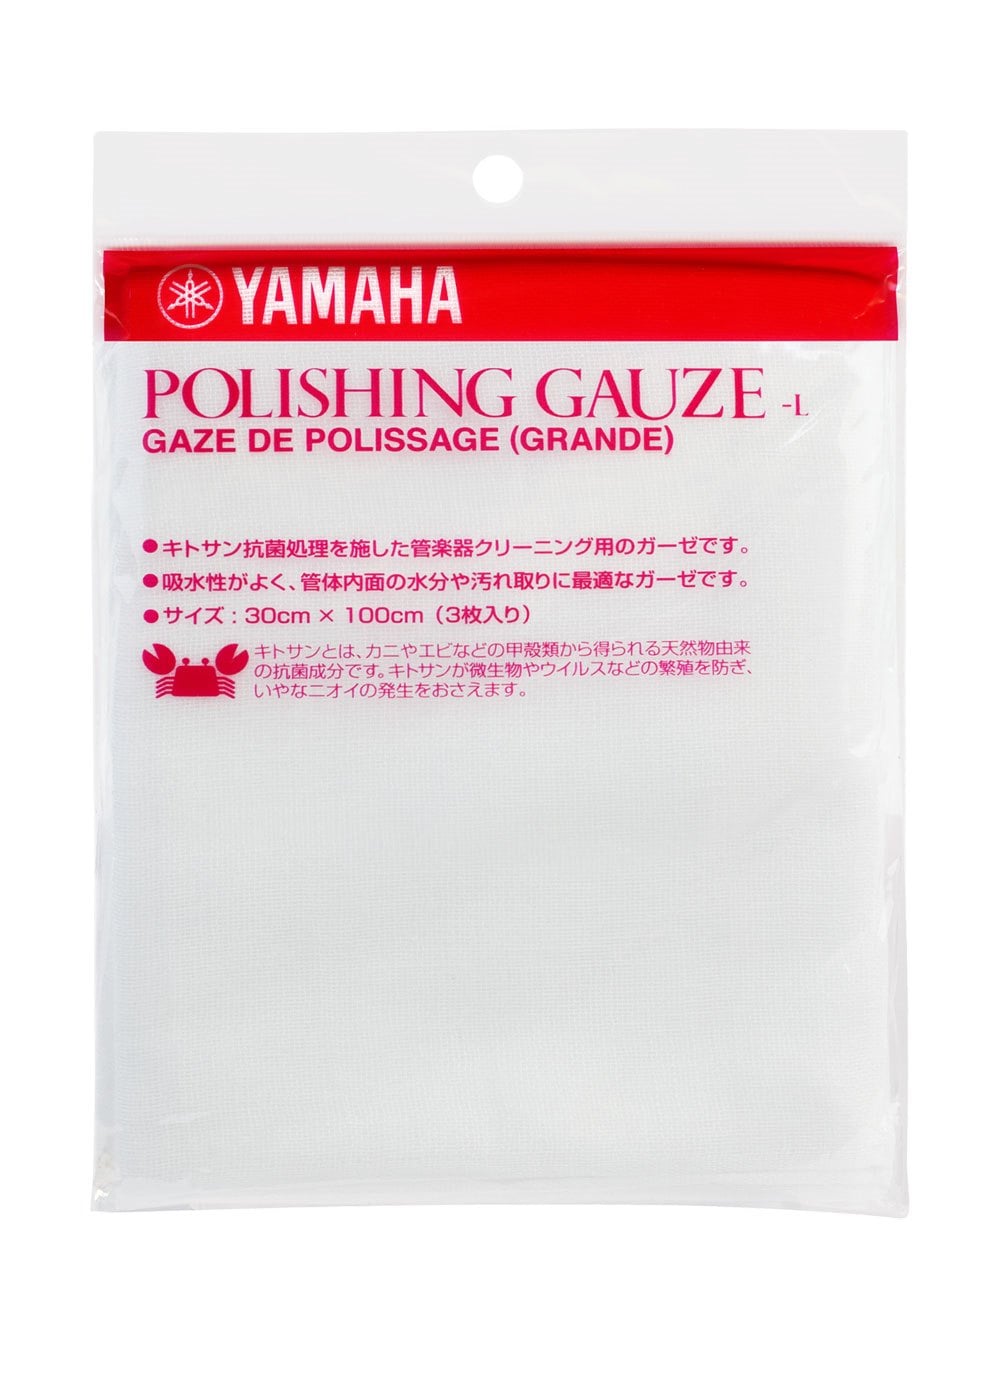 Yamaha Polishing Gauze